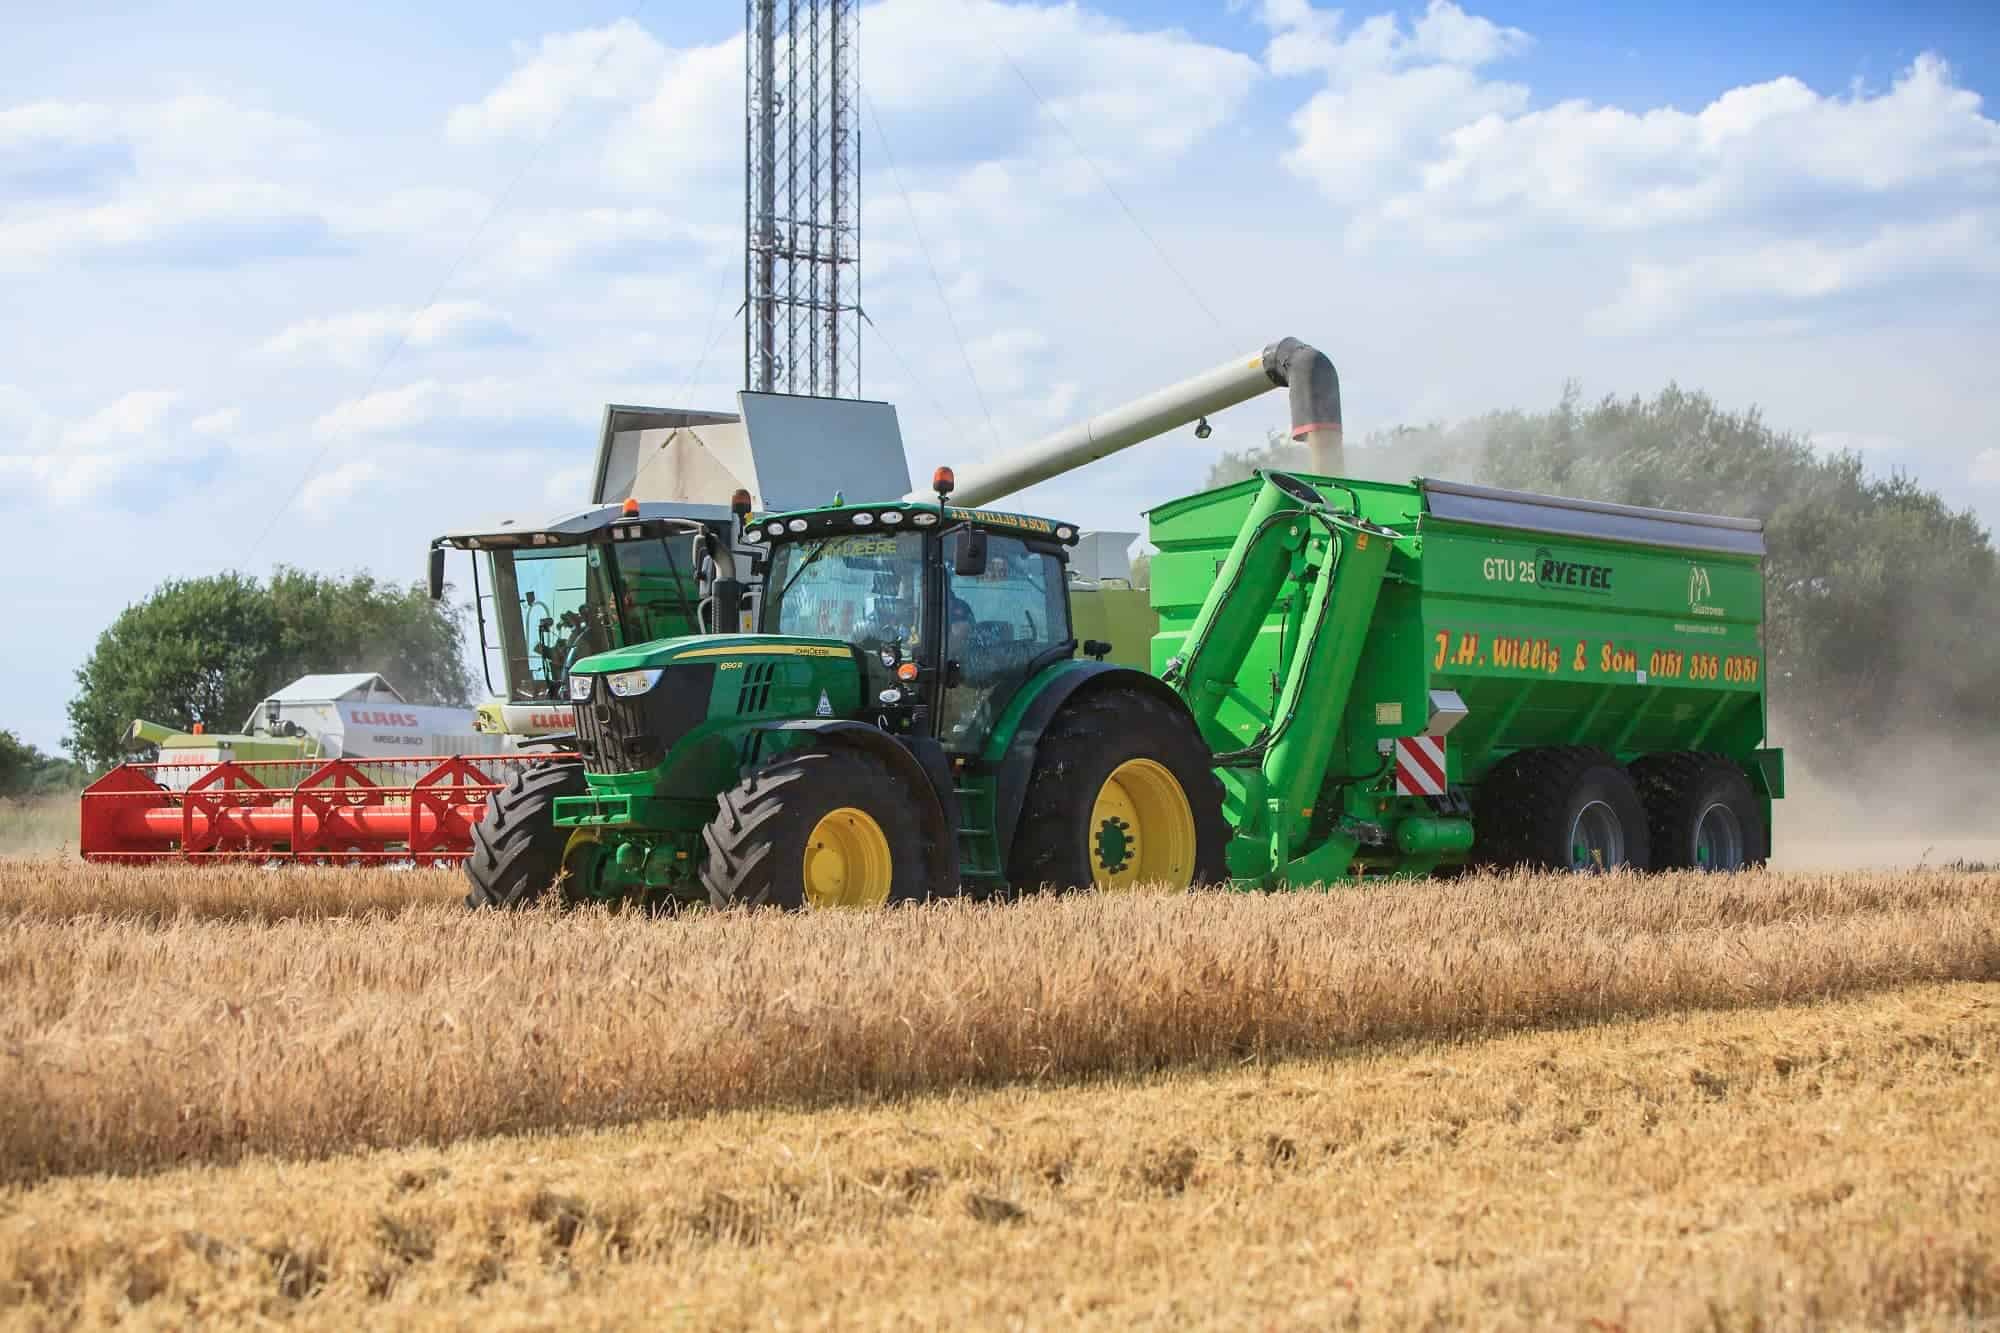 Grain chaser in field